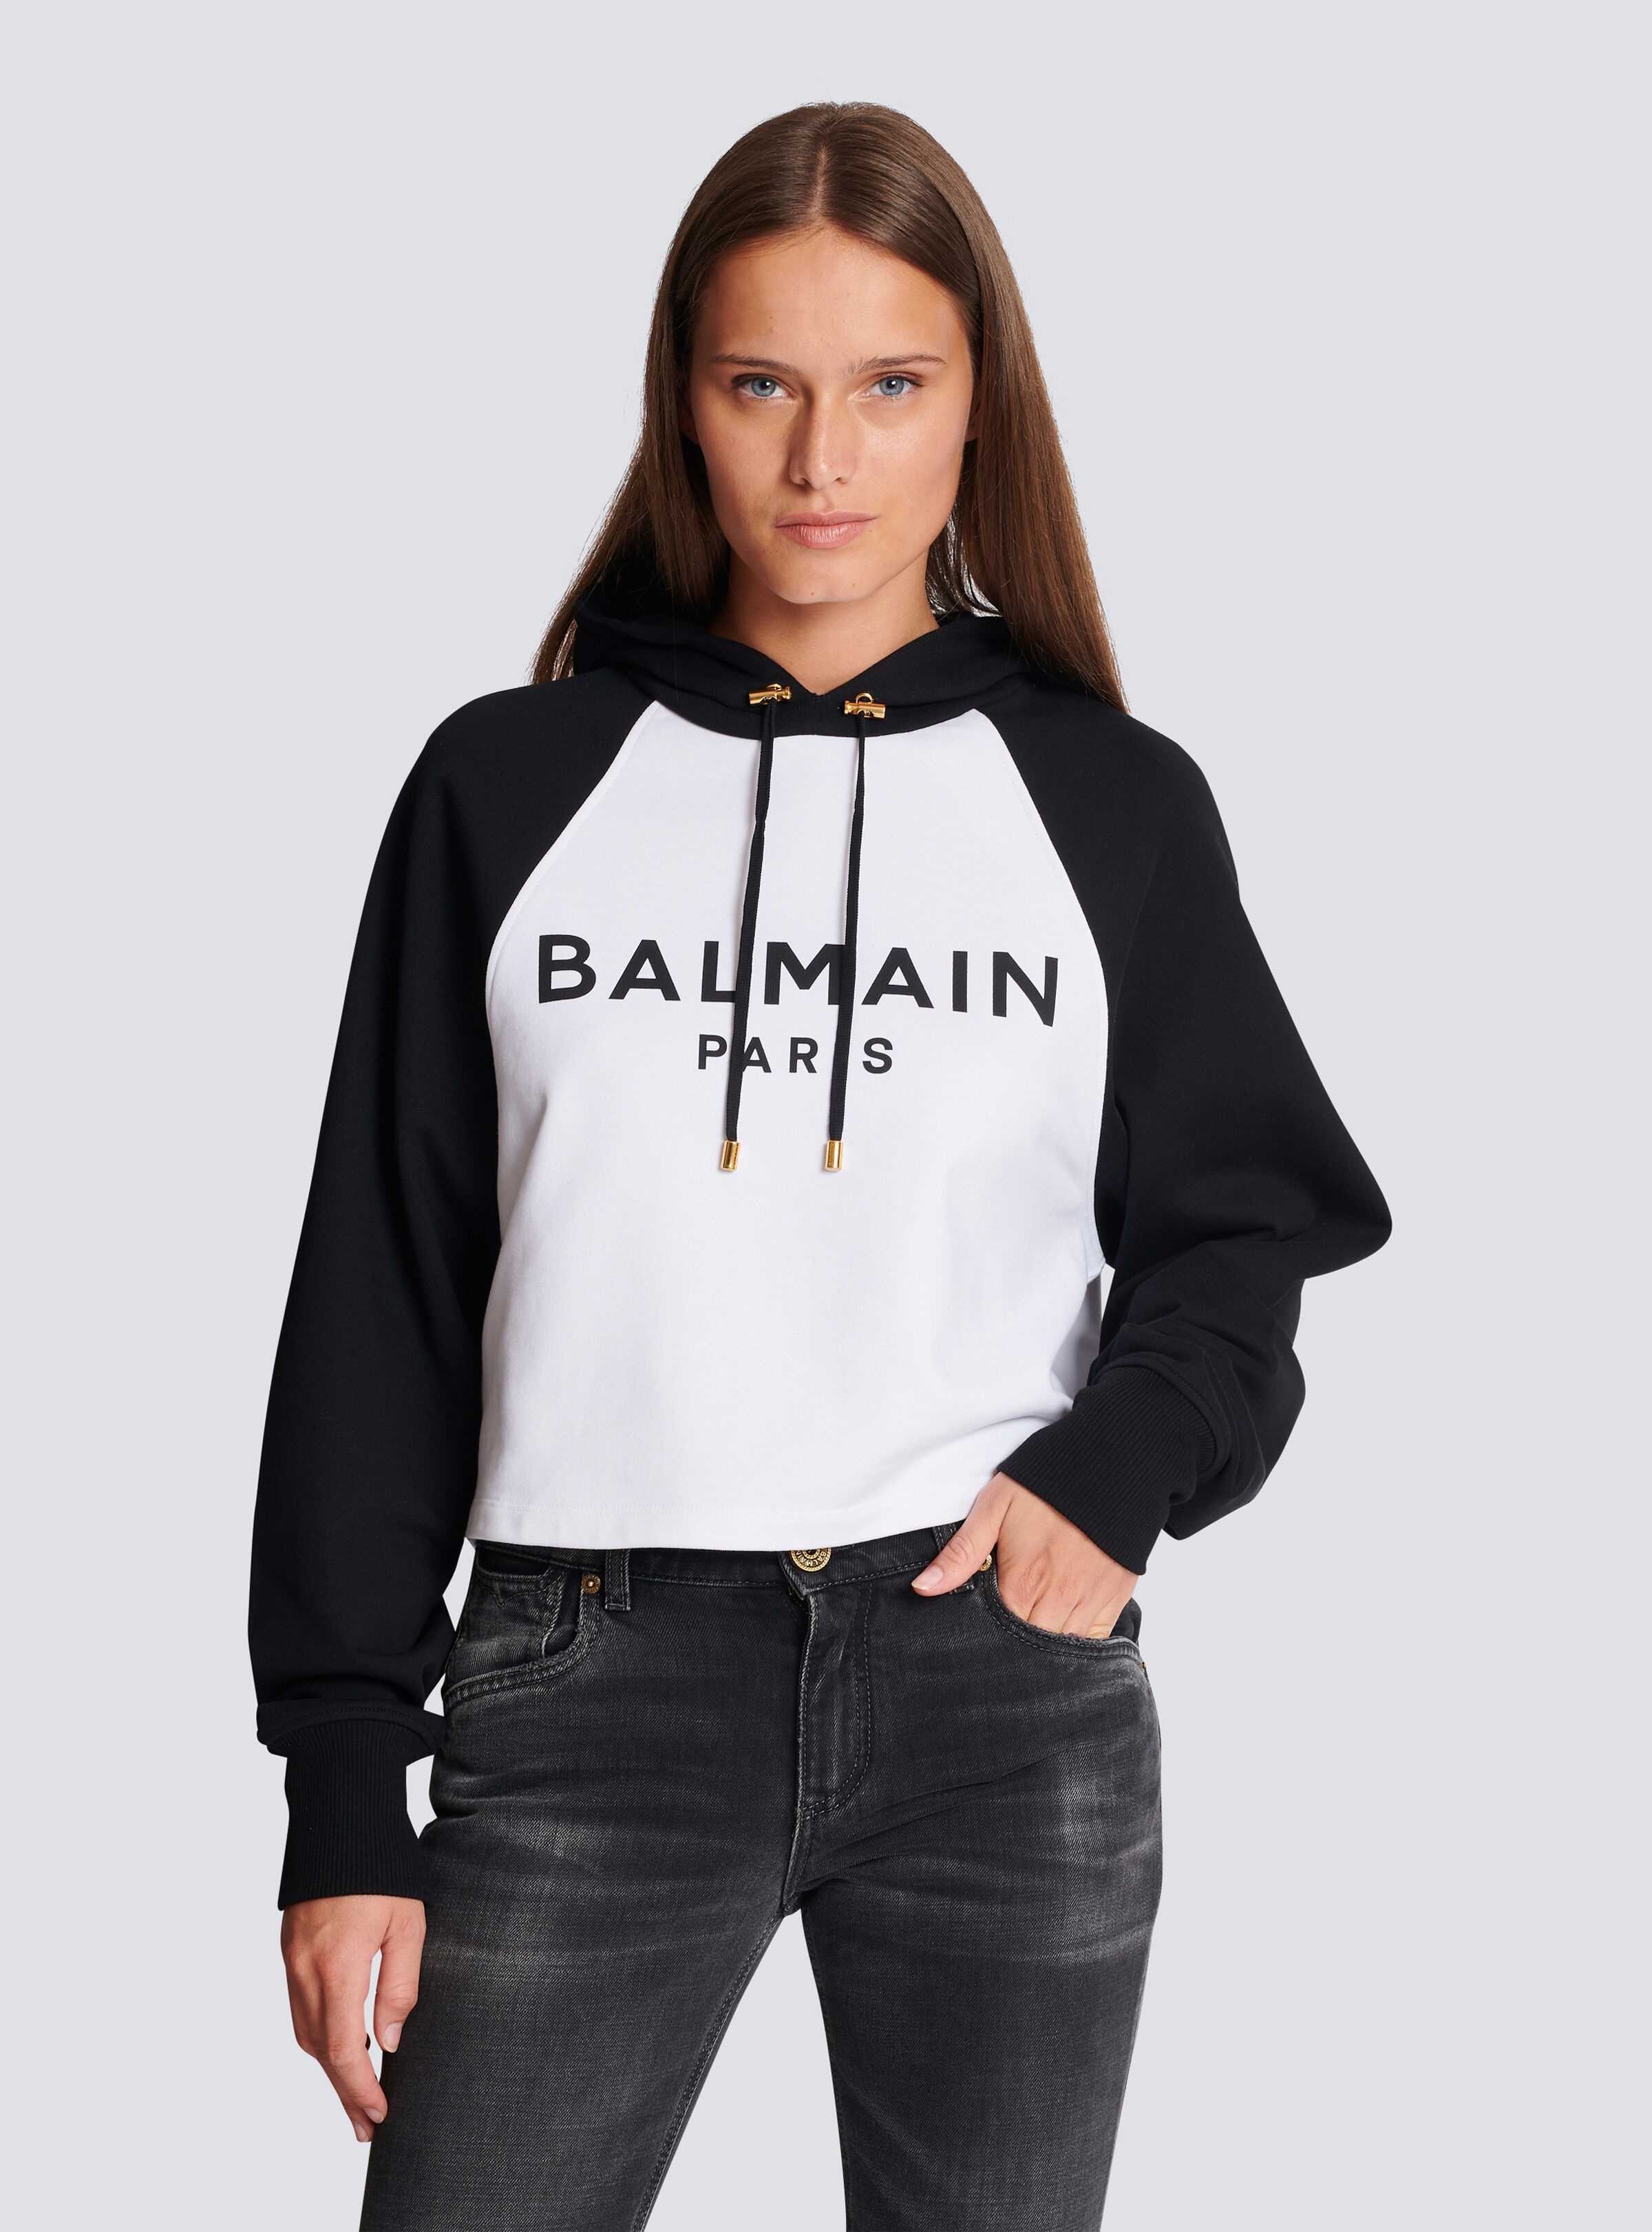 Balmain Paris hoodie - 6